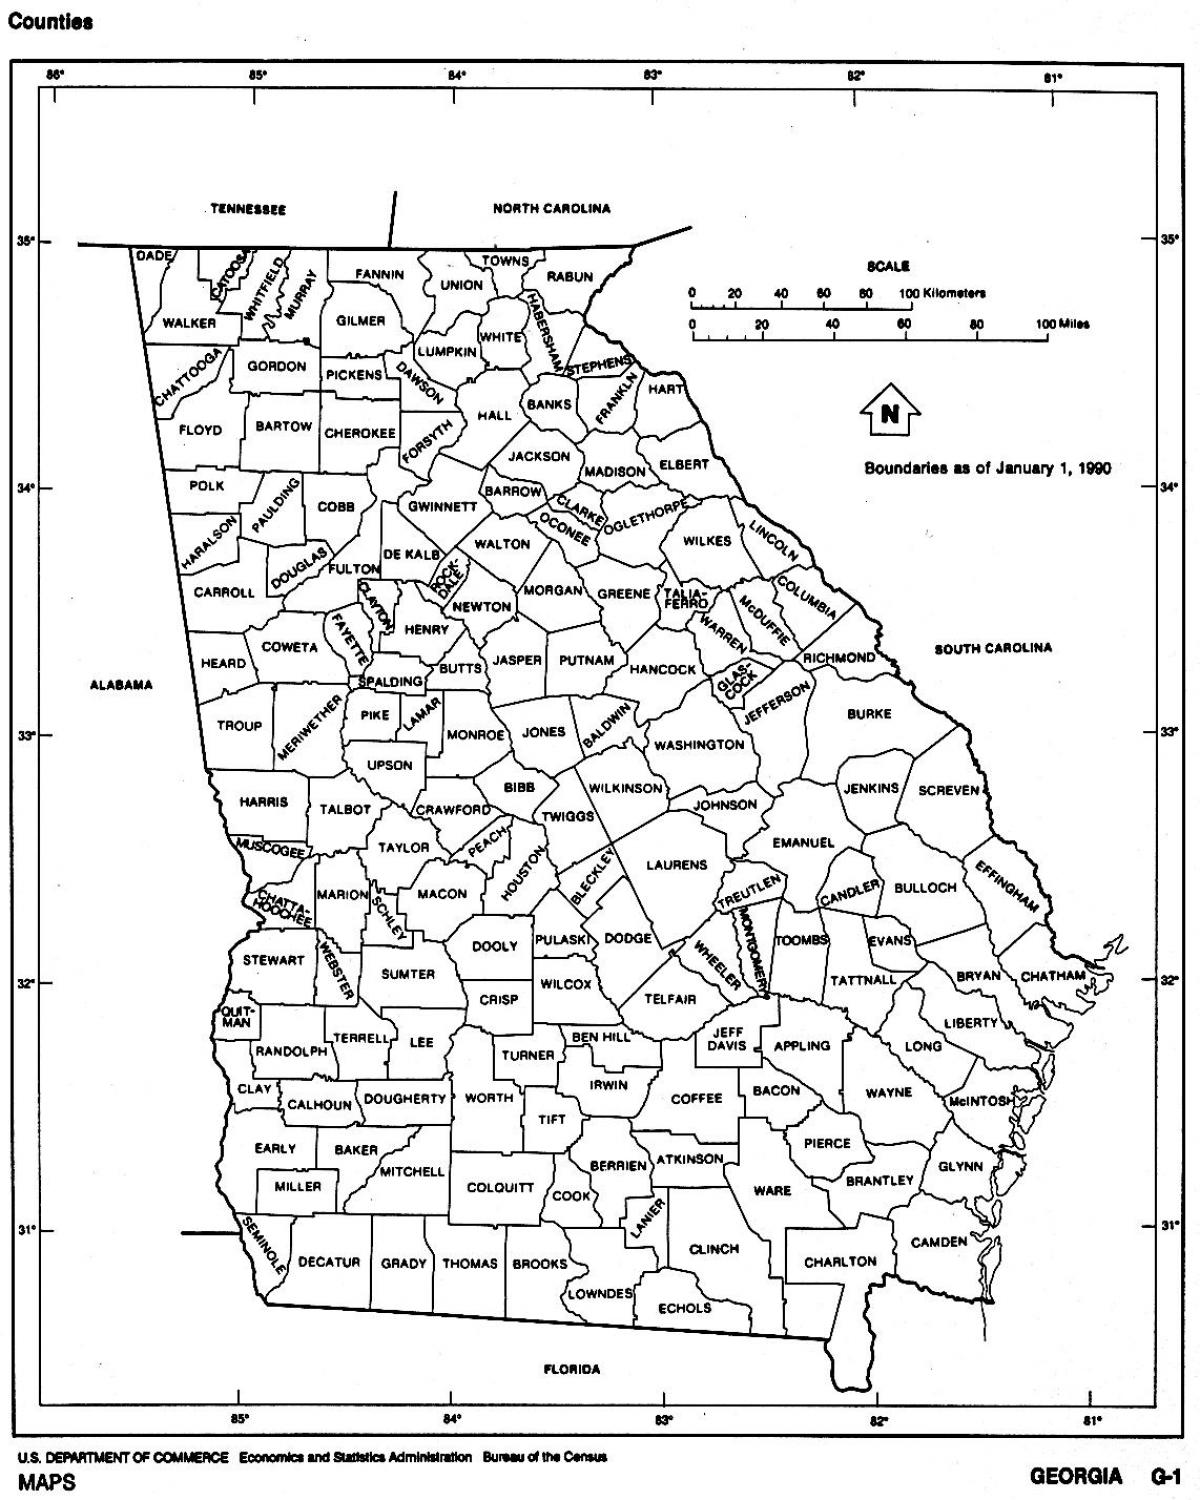 Georgia state kart